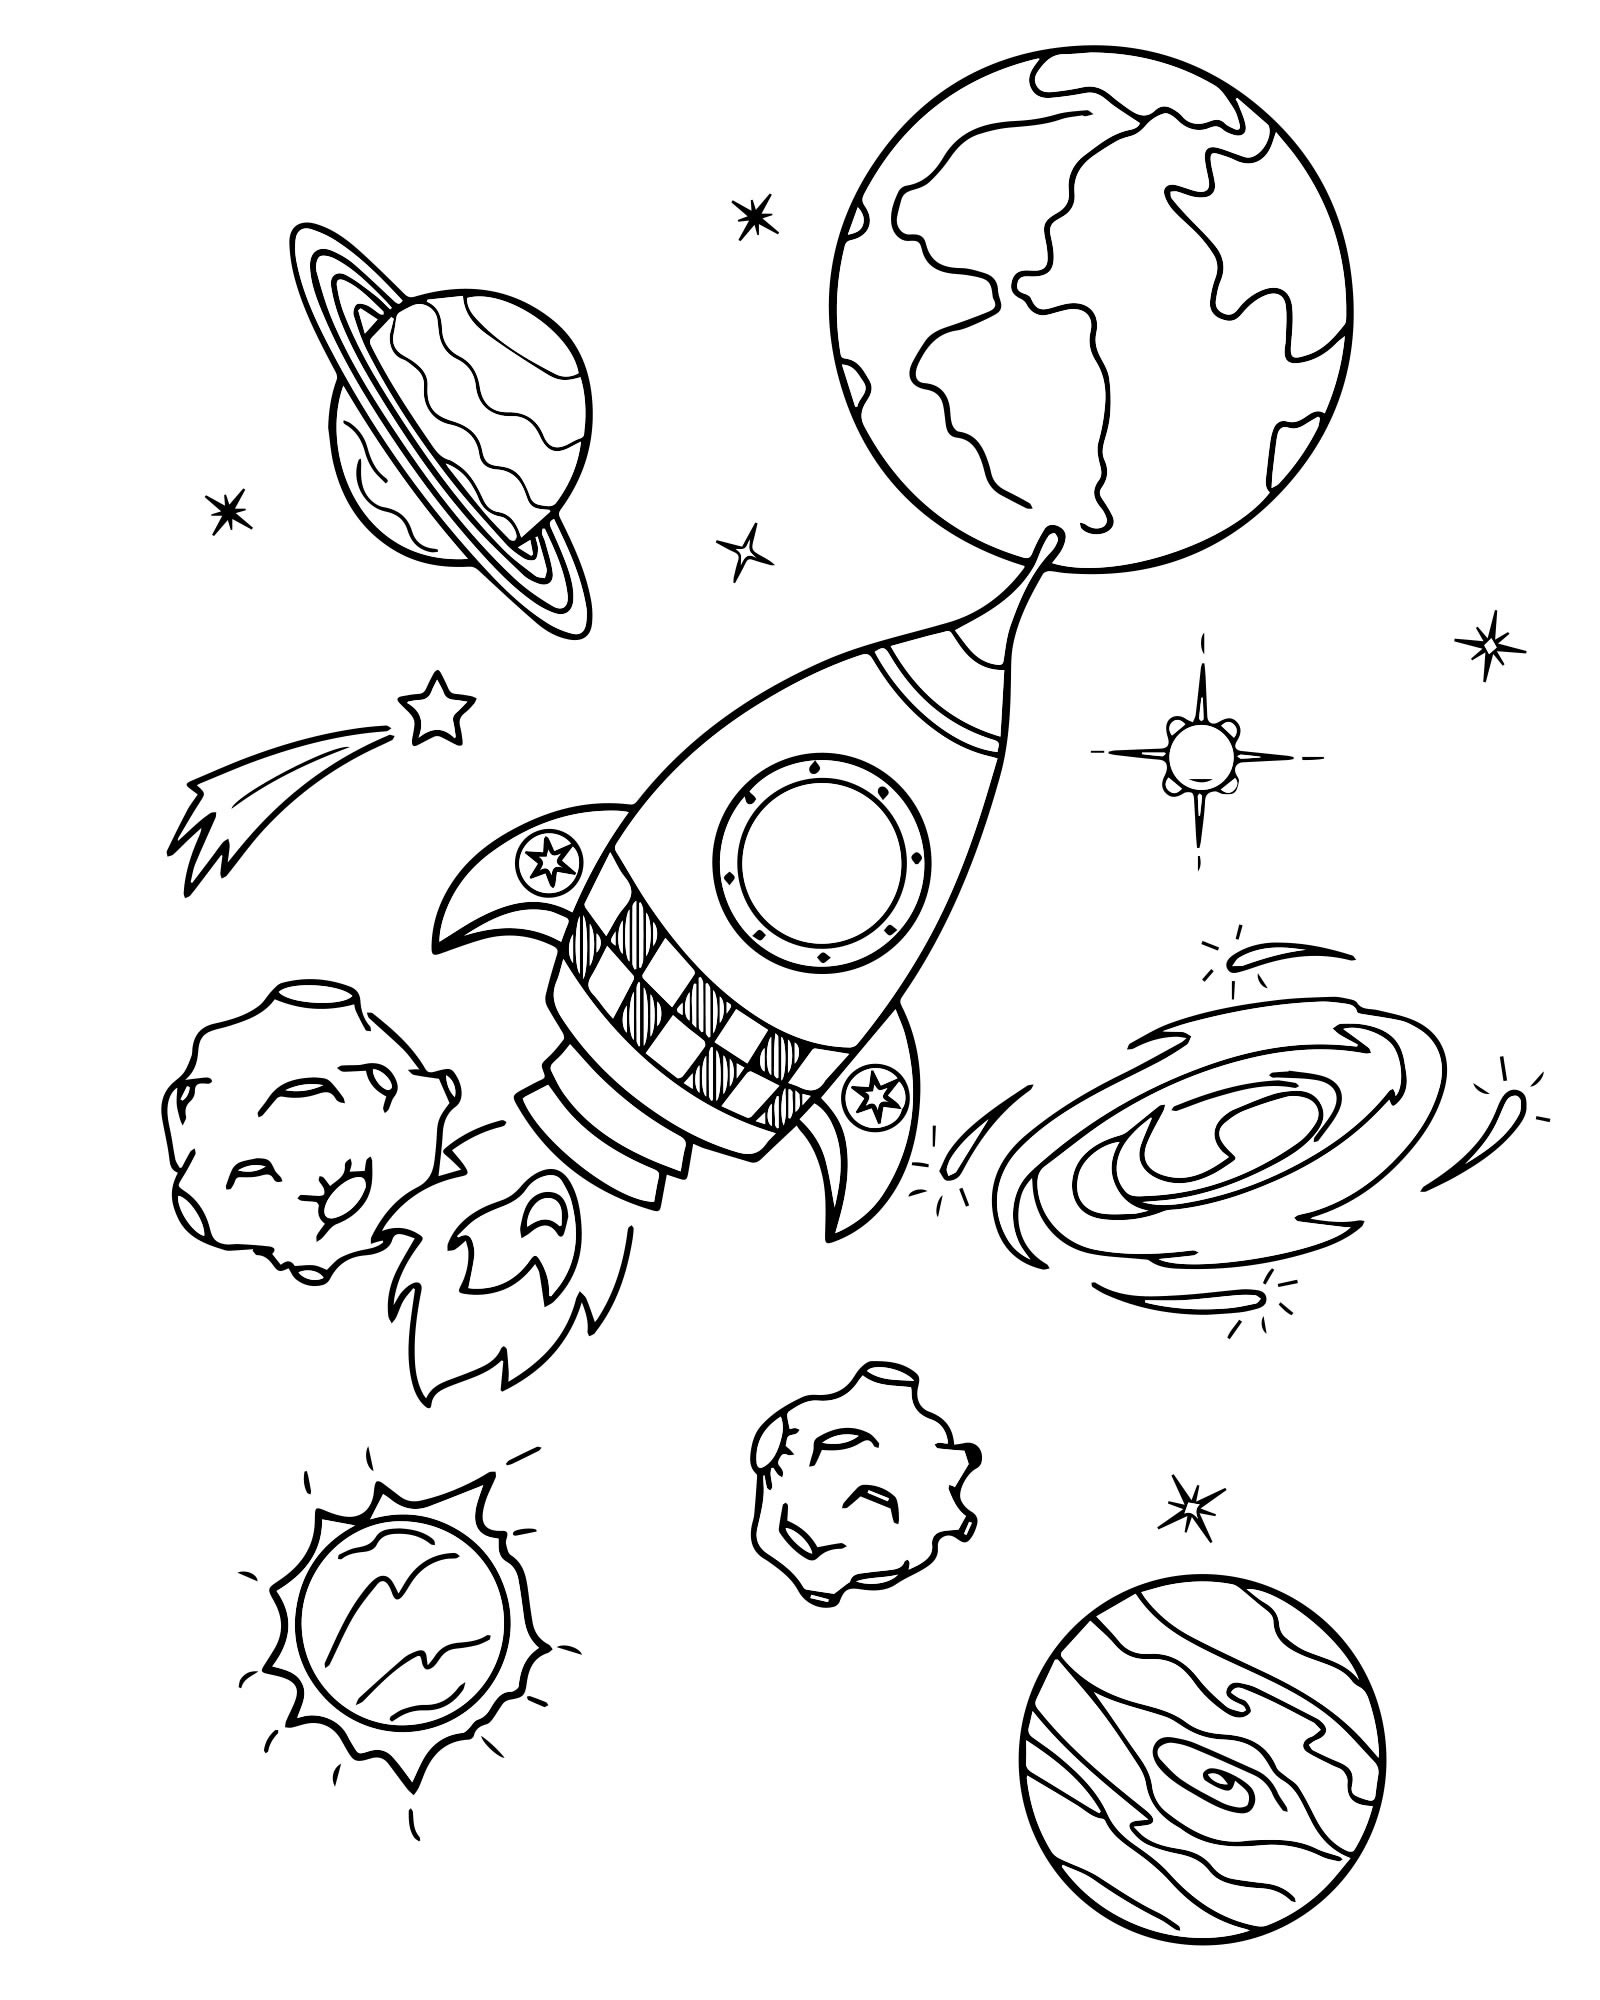 Раскраски 12 апреля день космонавтики для детей. Космос раскраска для детей. Раскраска. В космосе. Раскраска космос и планеты для детей. Раскраска для малышей. Космос.